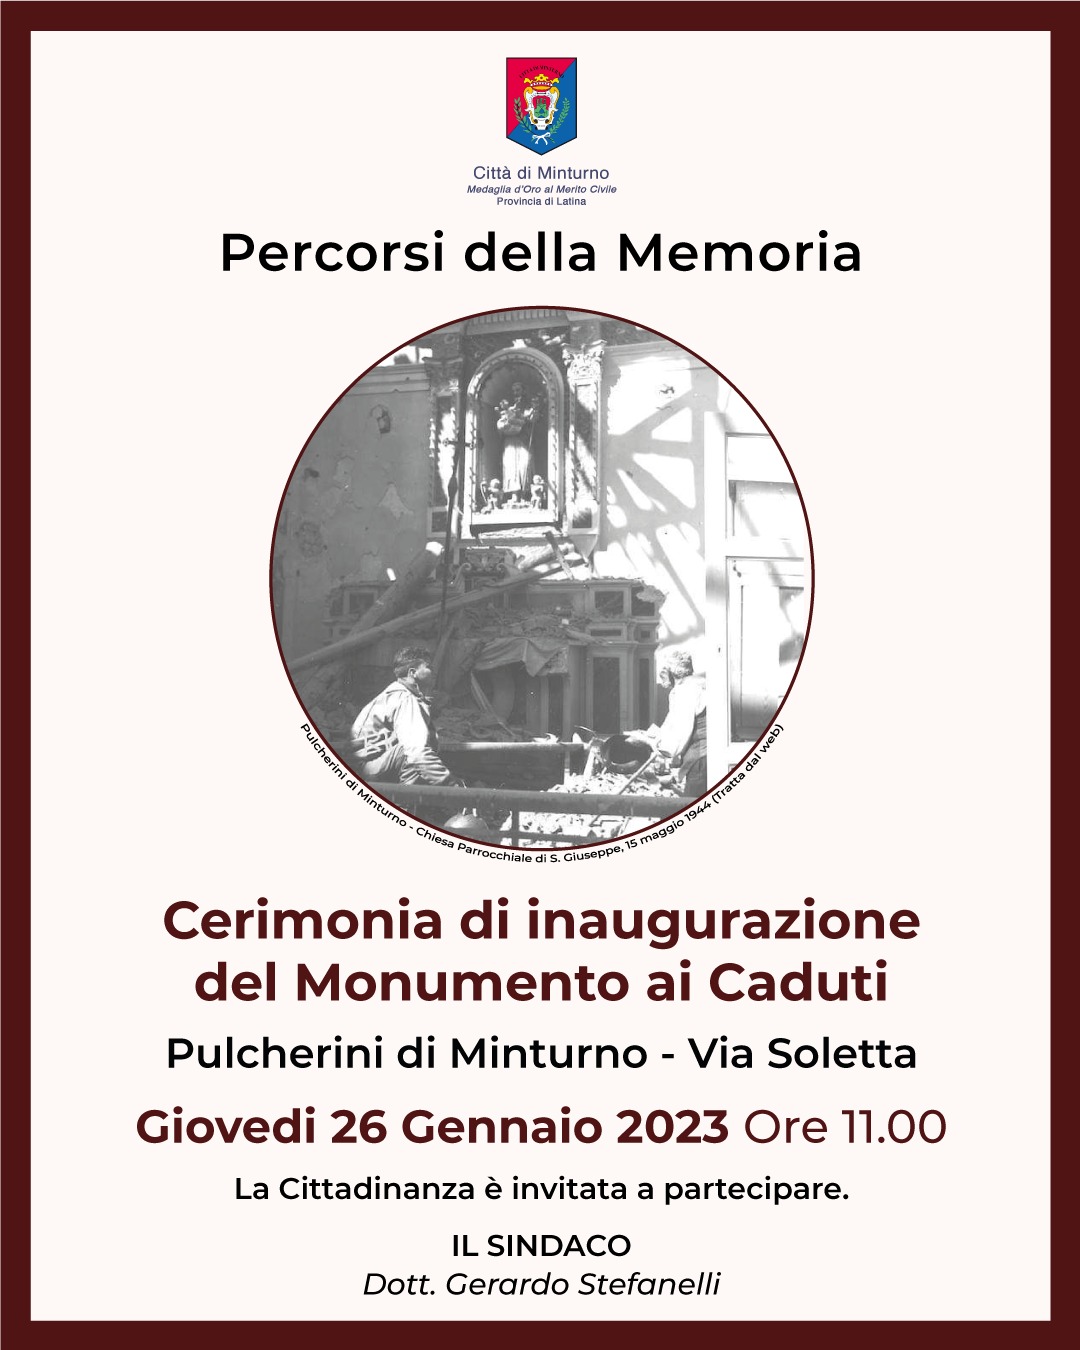 Cerimonia di inaugurazione del Monumento ai Caduti- Pulcherini, giovedì 26 gennaio, ore 11:00